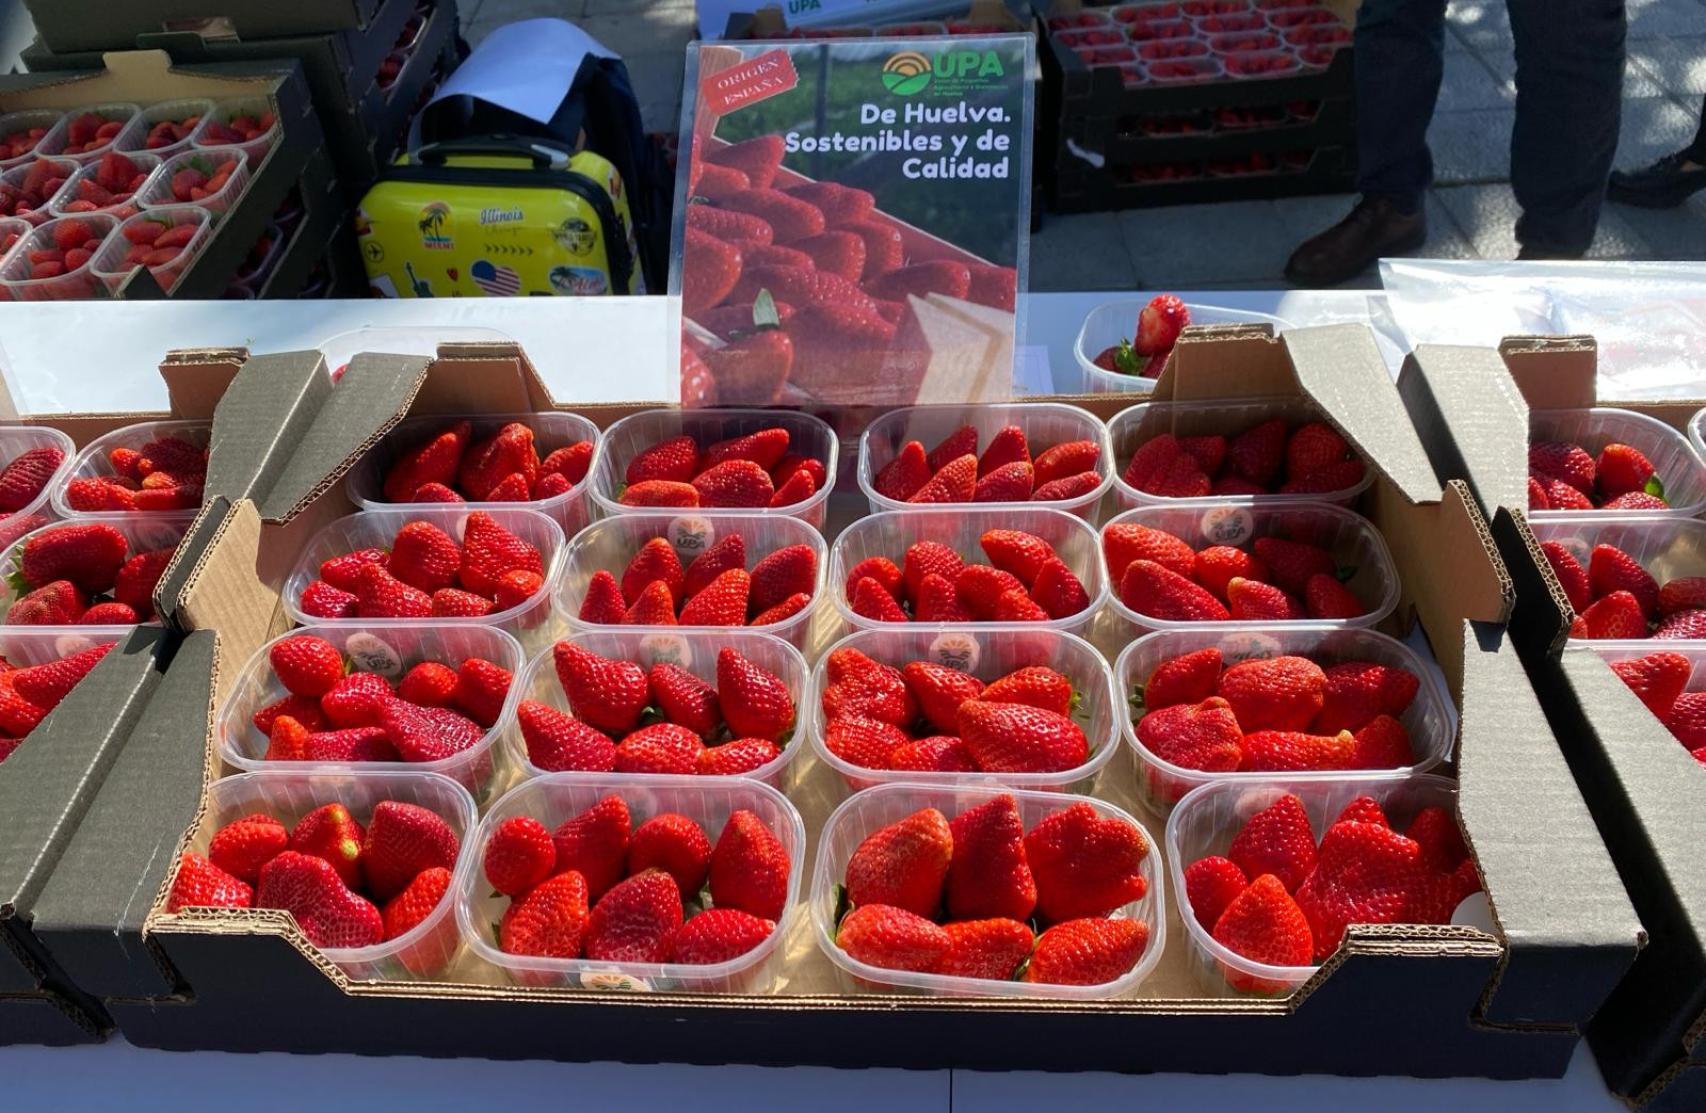 Las fresas de Huelva que ha repartido UPA